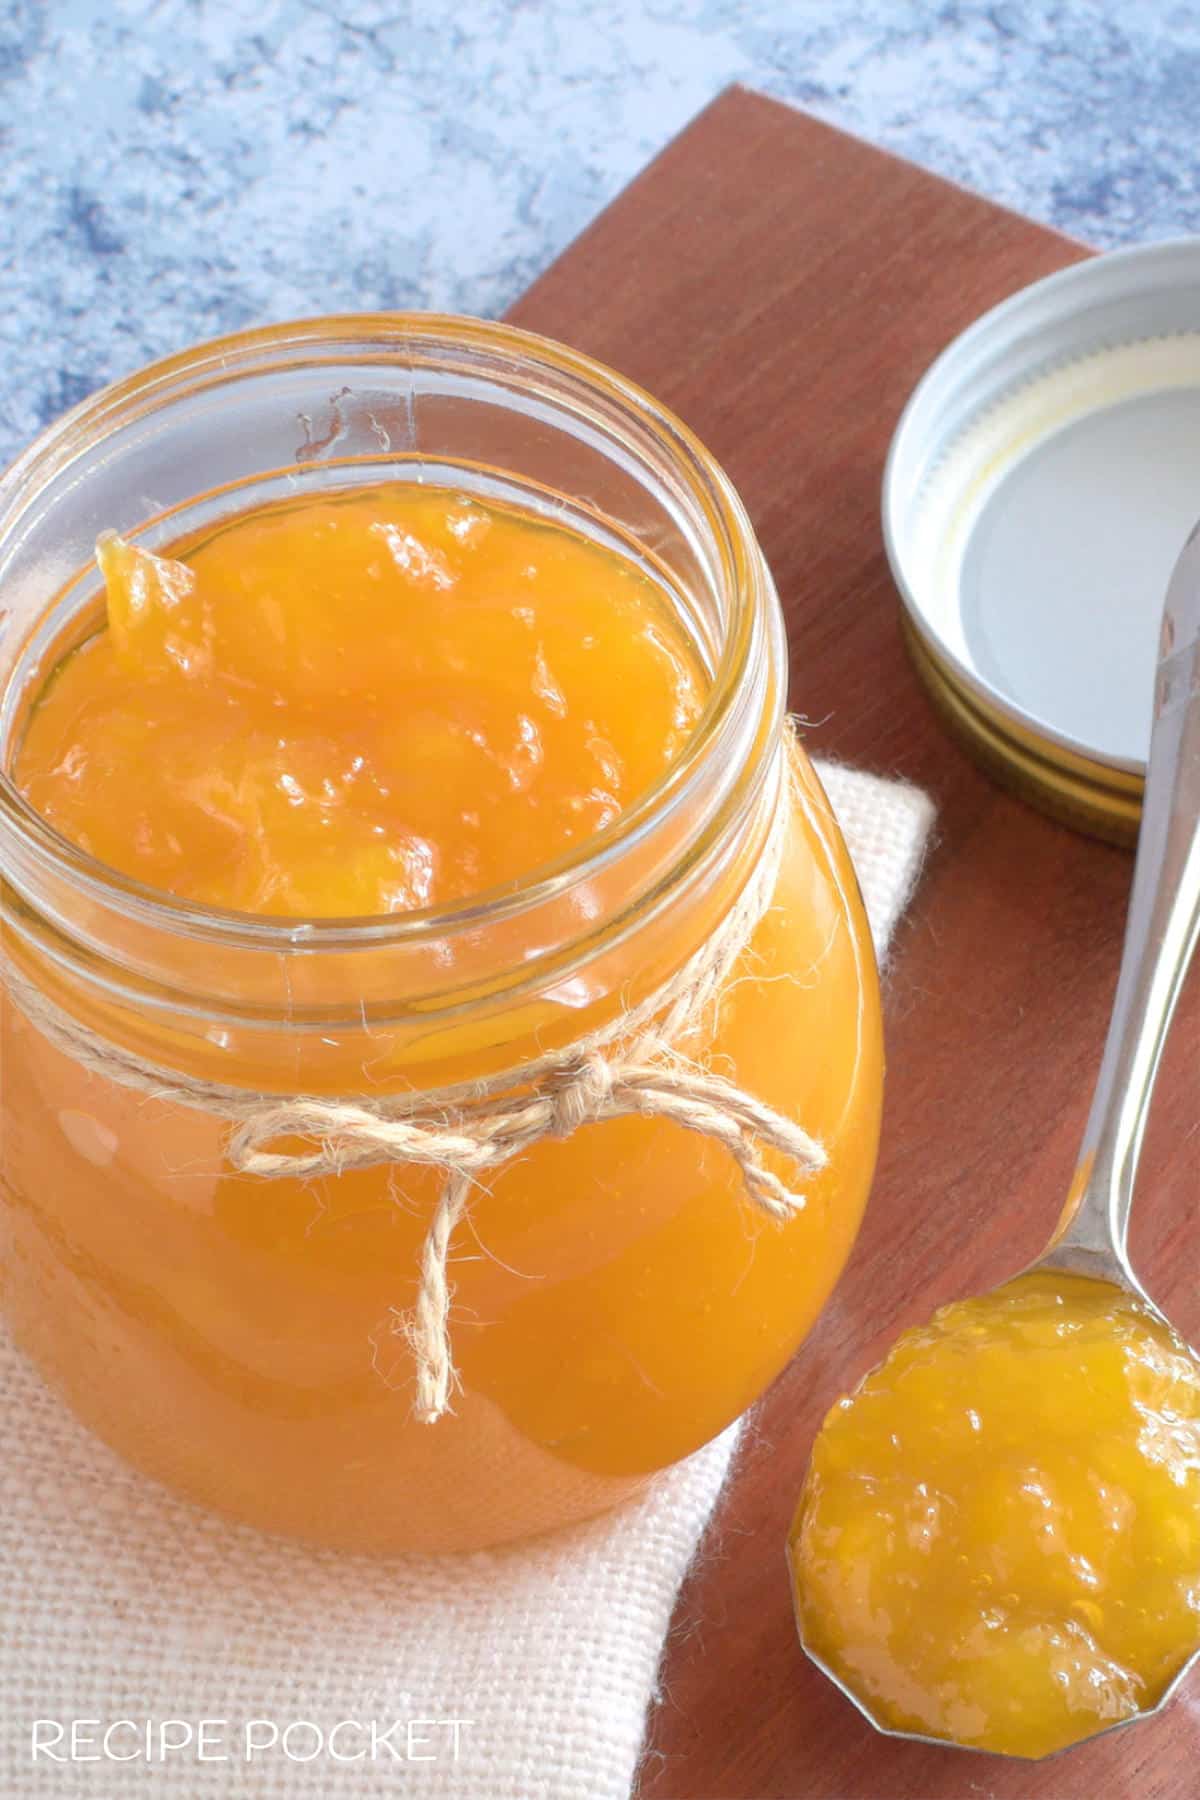 Mango jam in a glass storage jar.